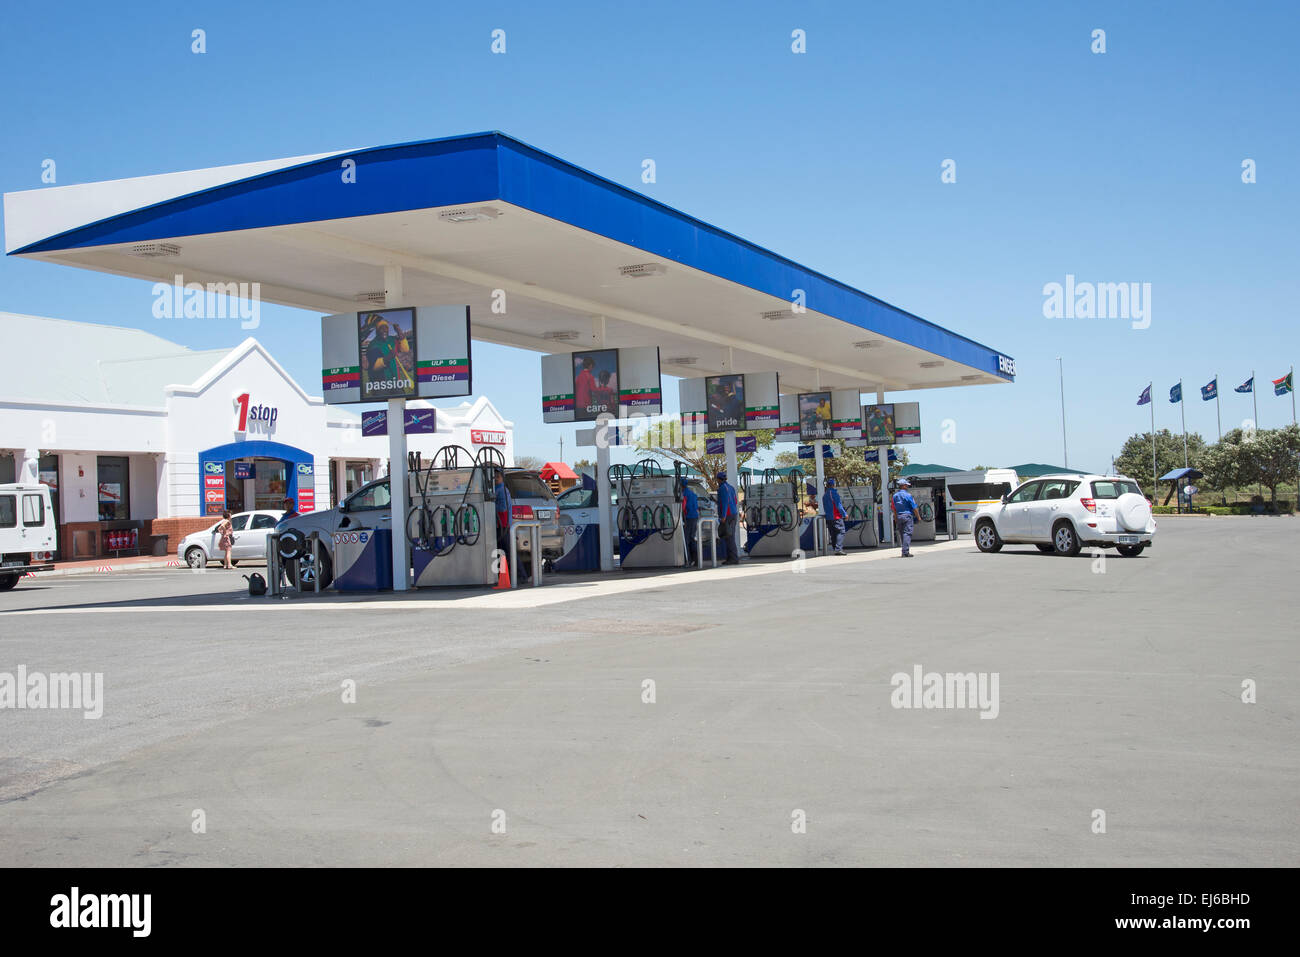 Tankstelle auf der N2 Autobahn in der Nähe von Mossel Bay-Südafrika  Stockfotografie - Alamy